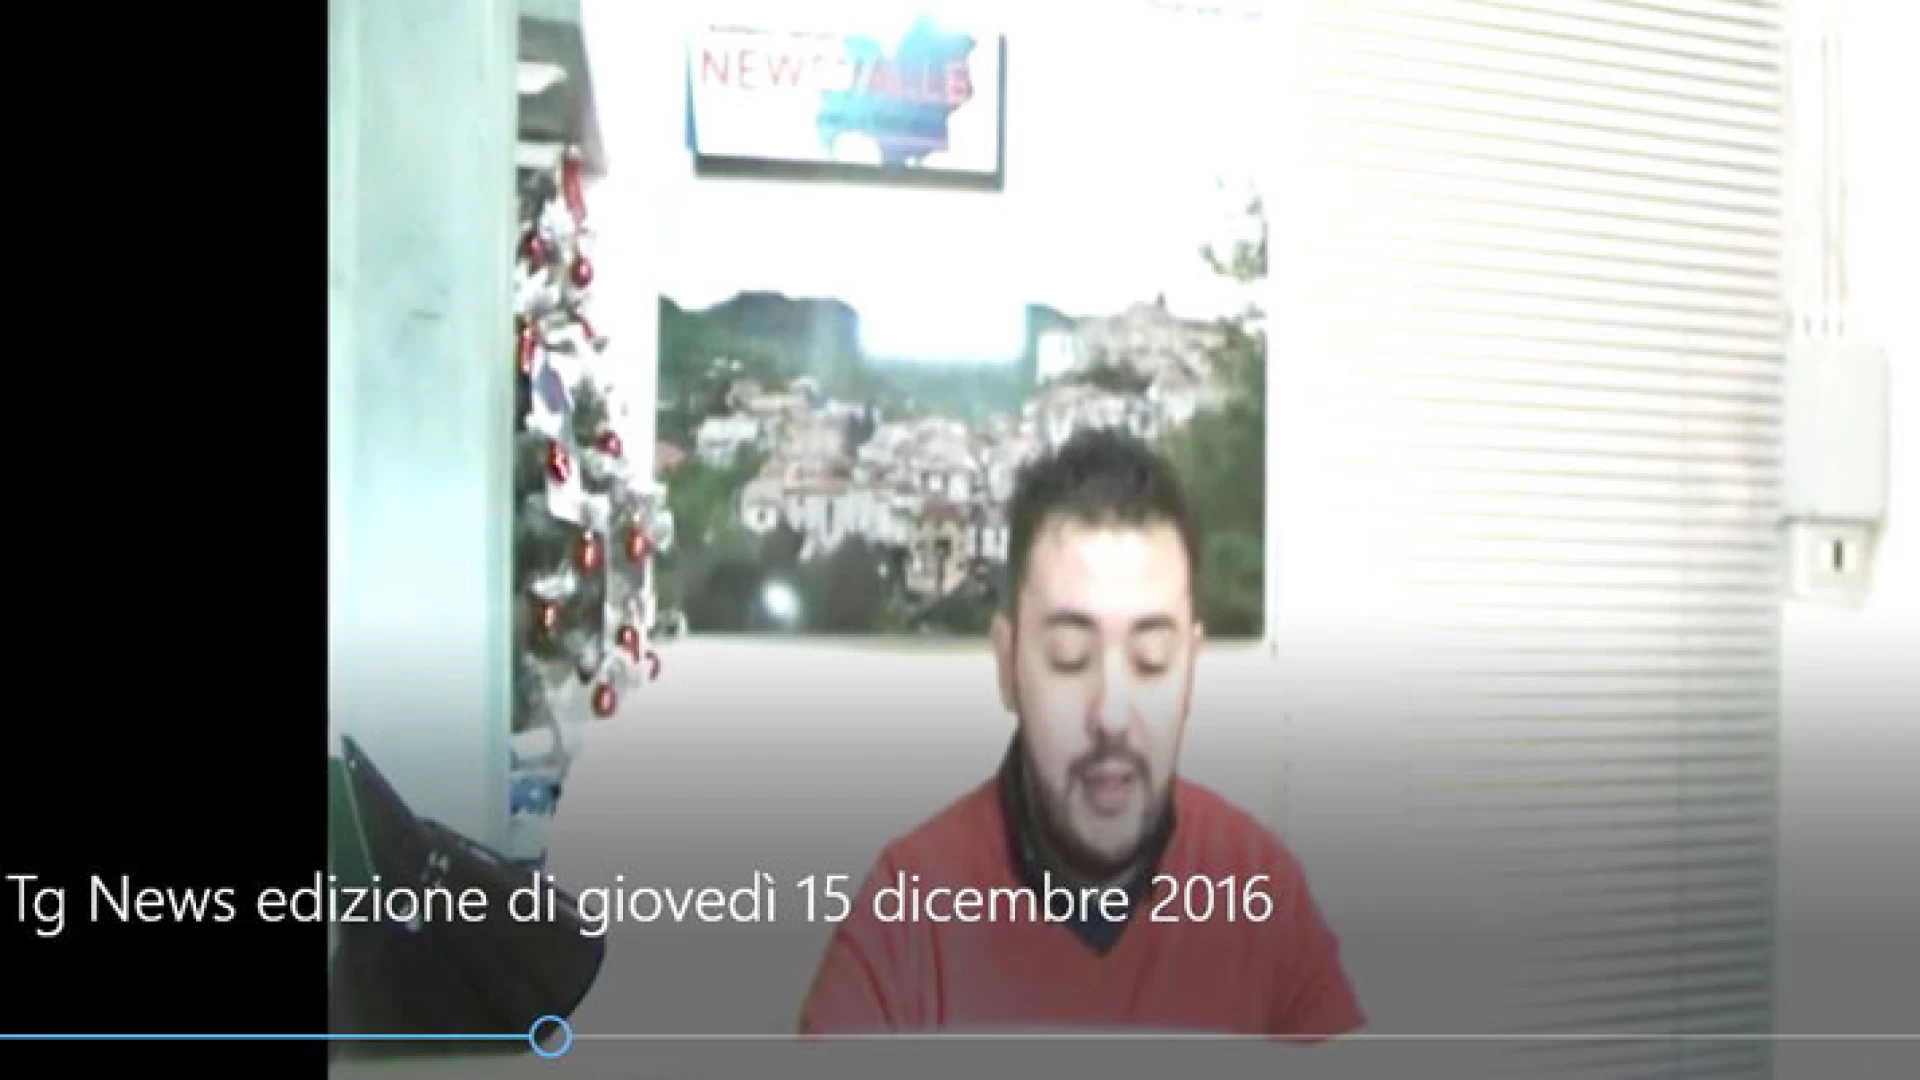 Tg News, edizione video di giovedì 15 dicembre 2016.